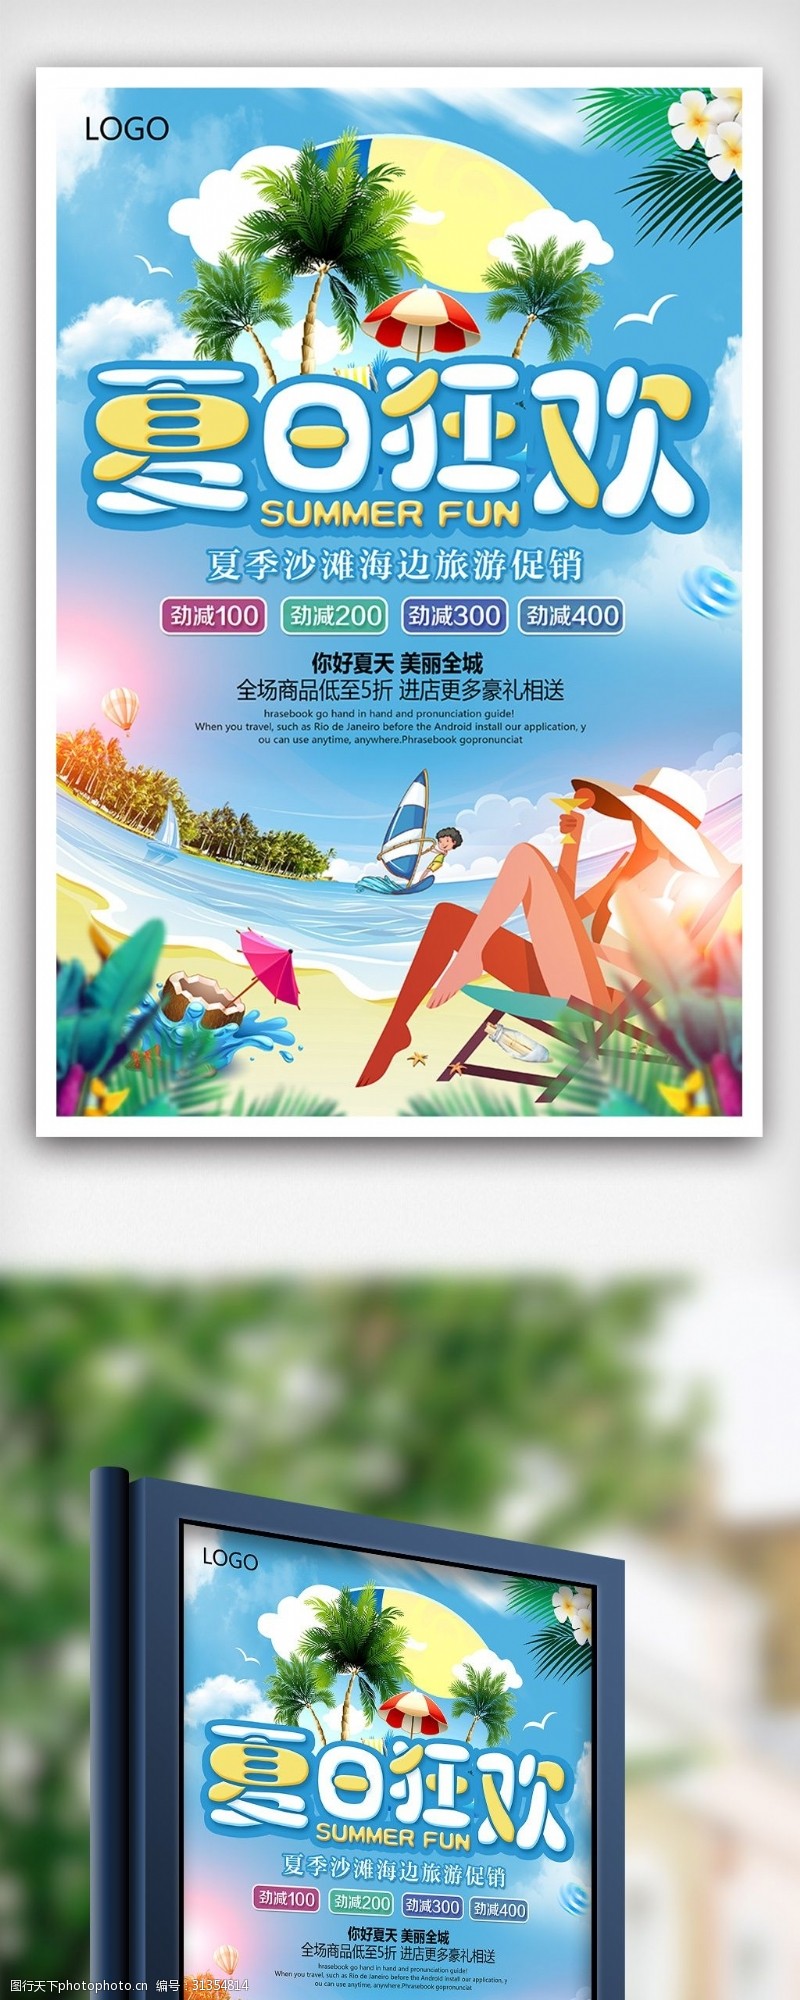 夏日狂欢旅游季海边沙滩旅游促销海报